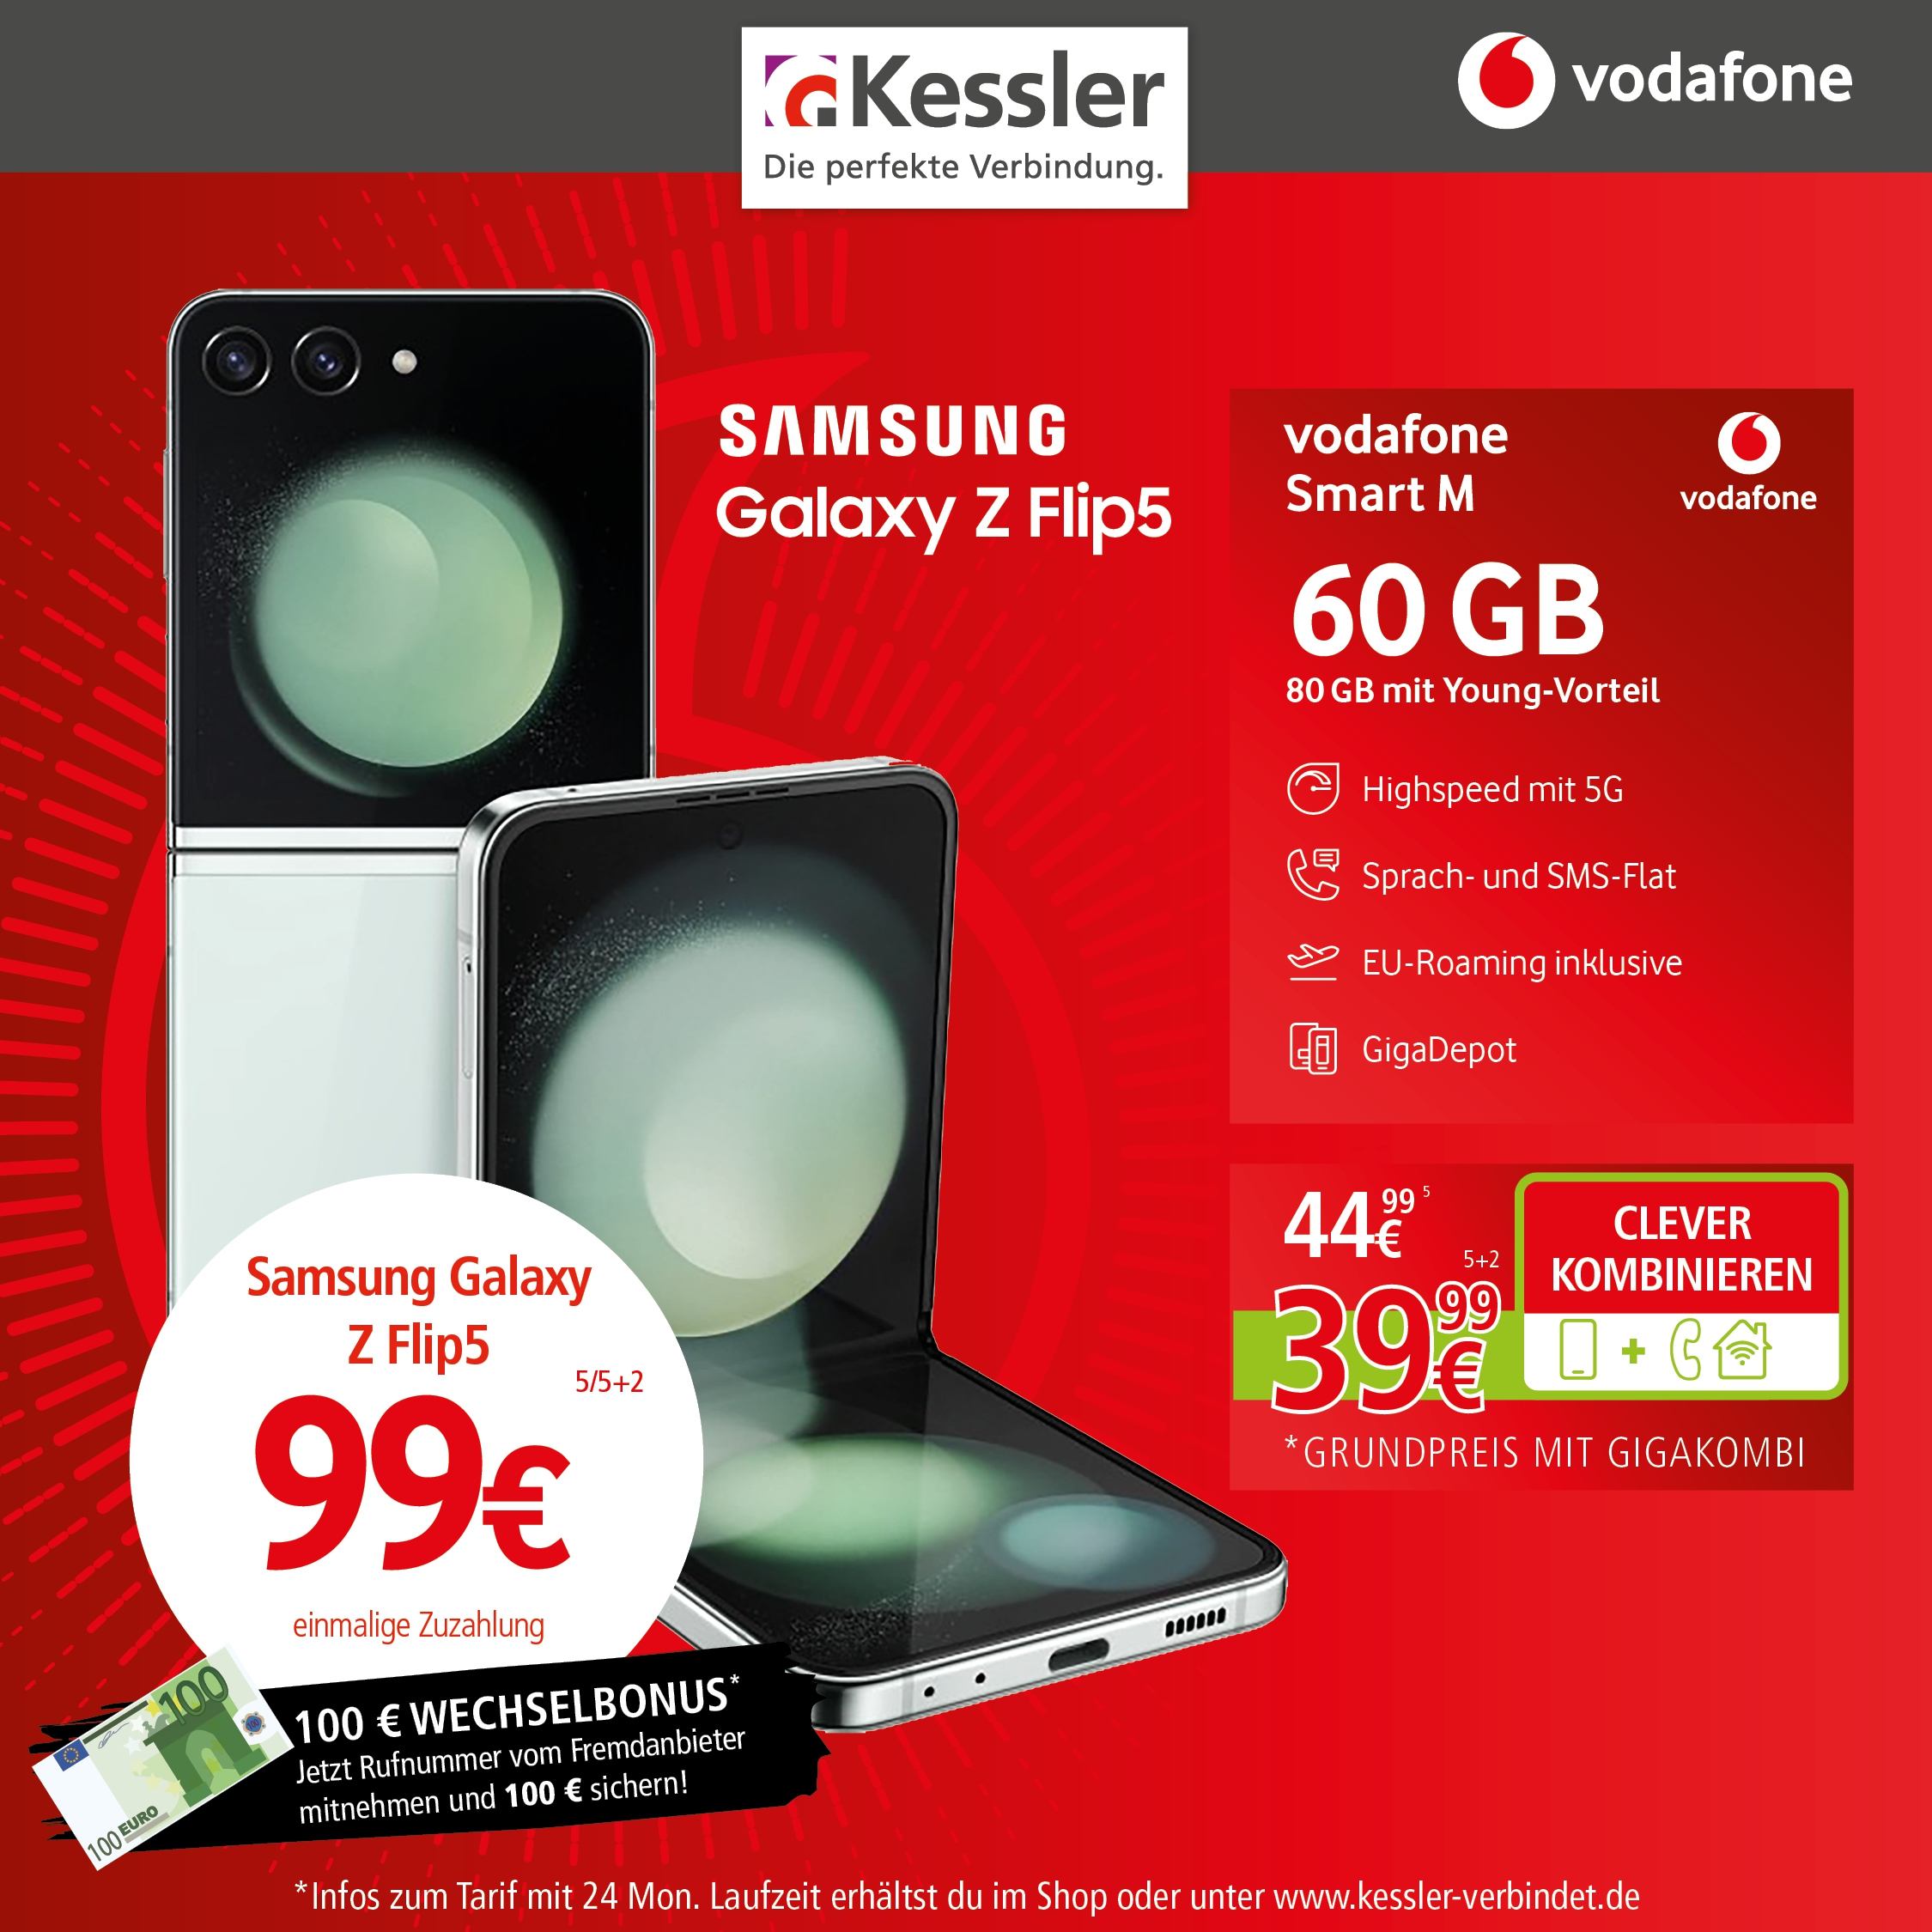 Vodafone Smart M mit Galaxy Z Flip5